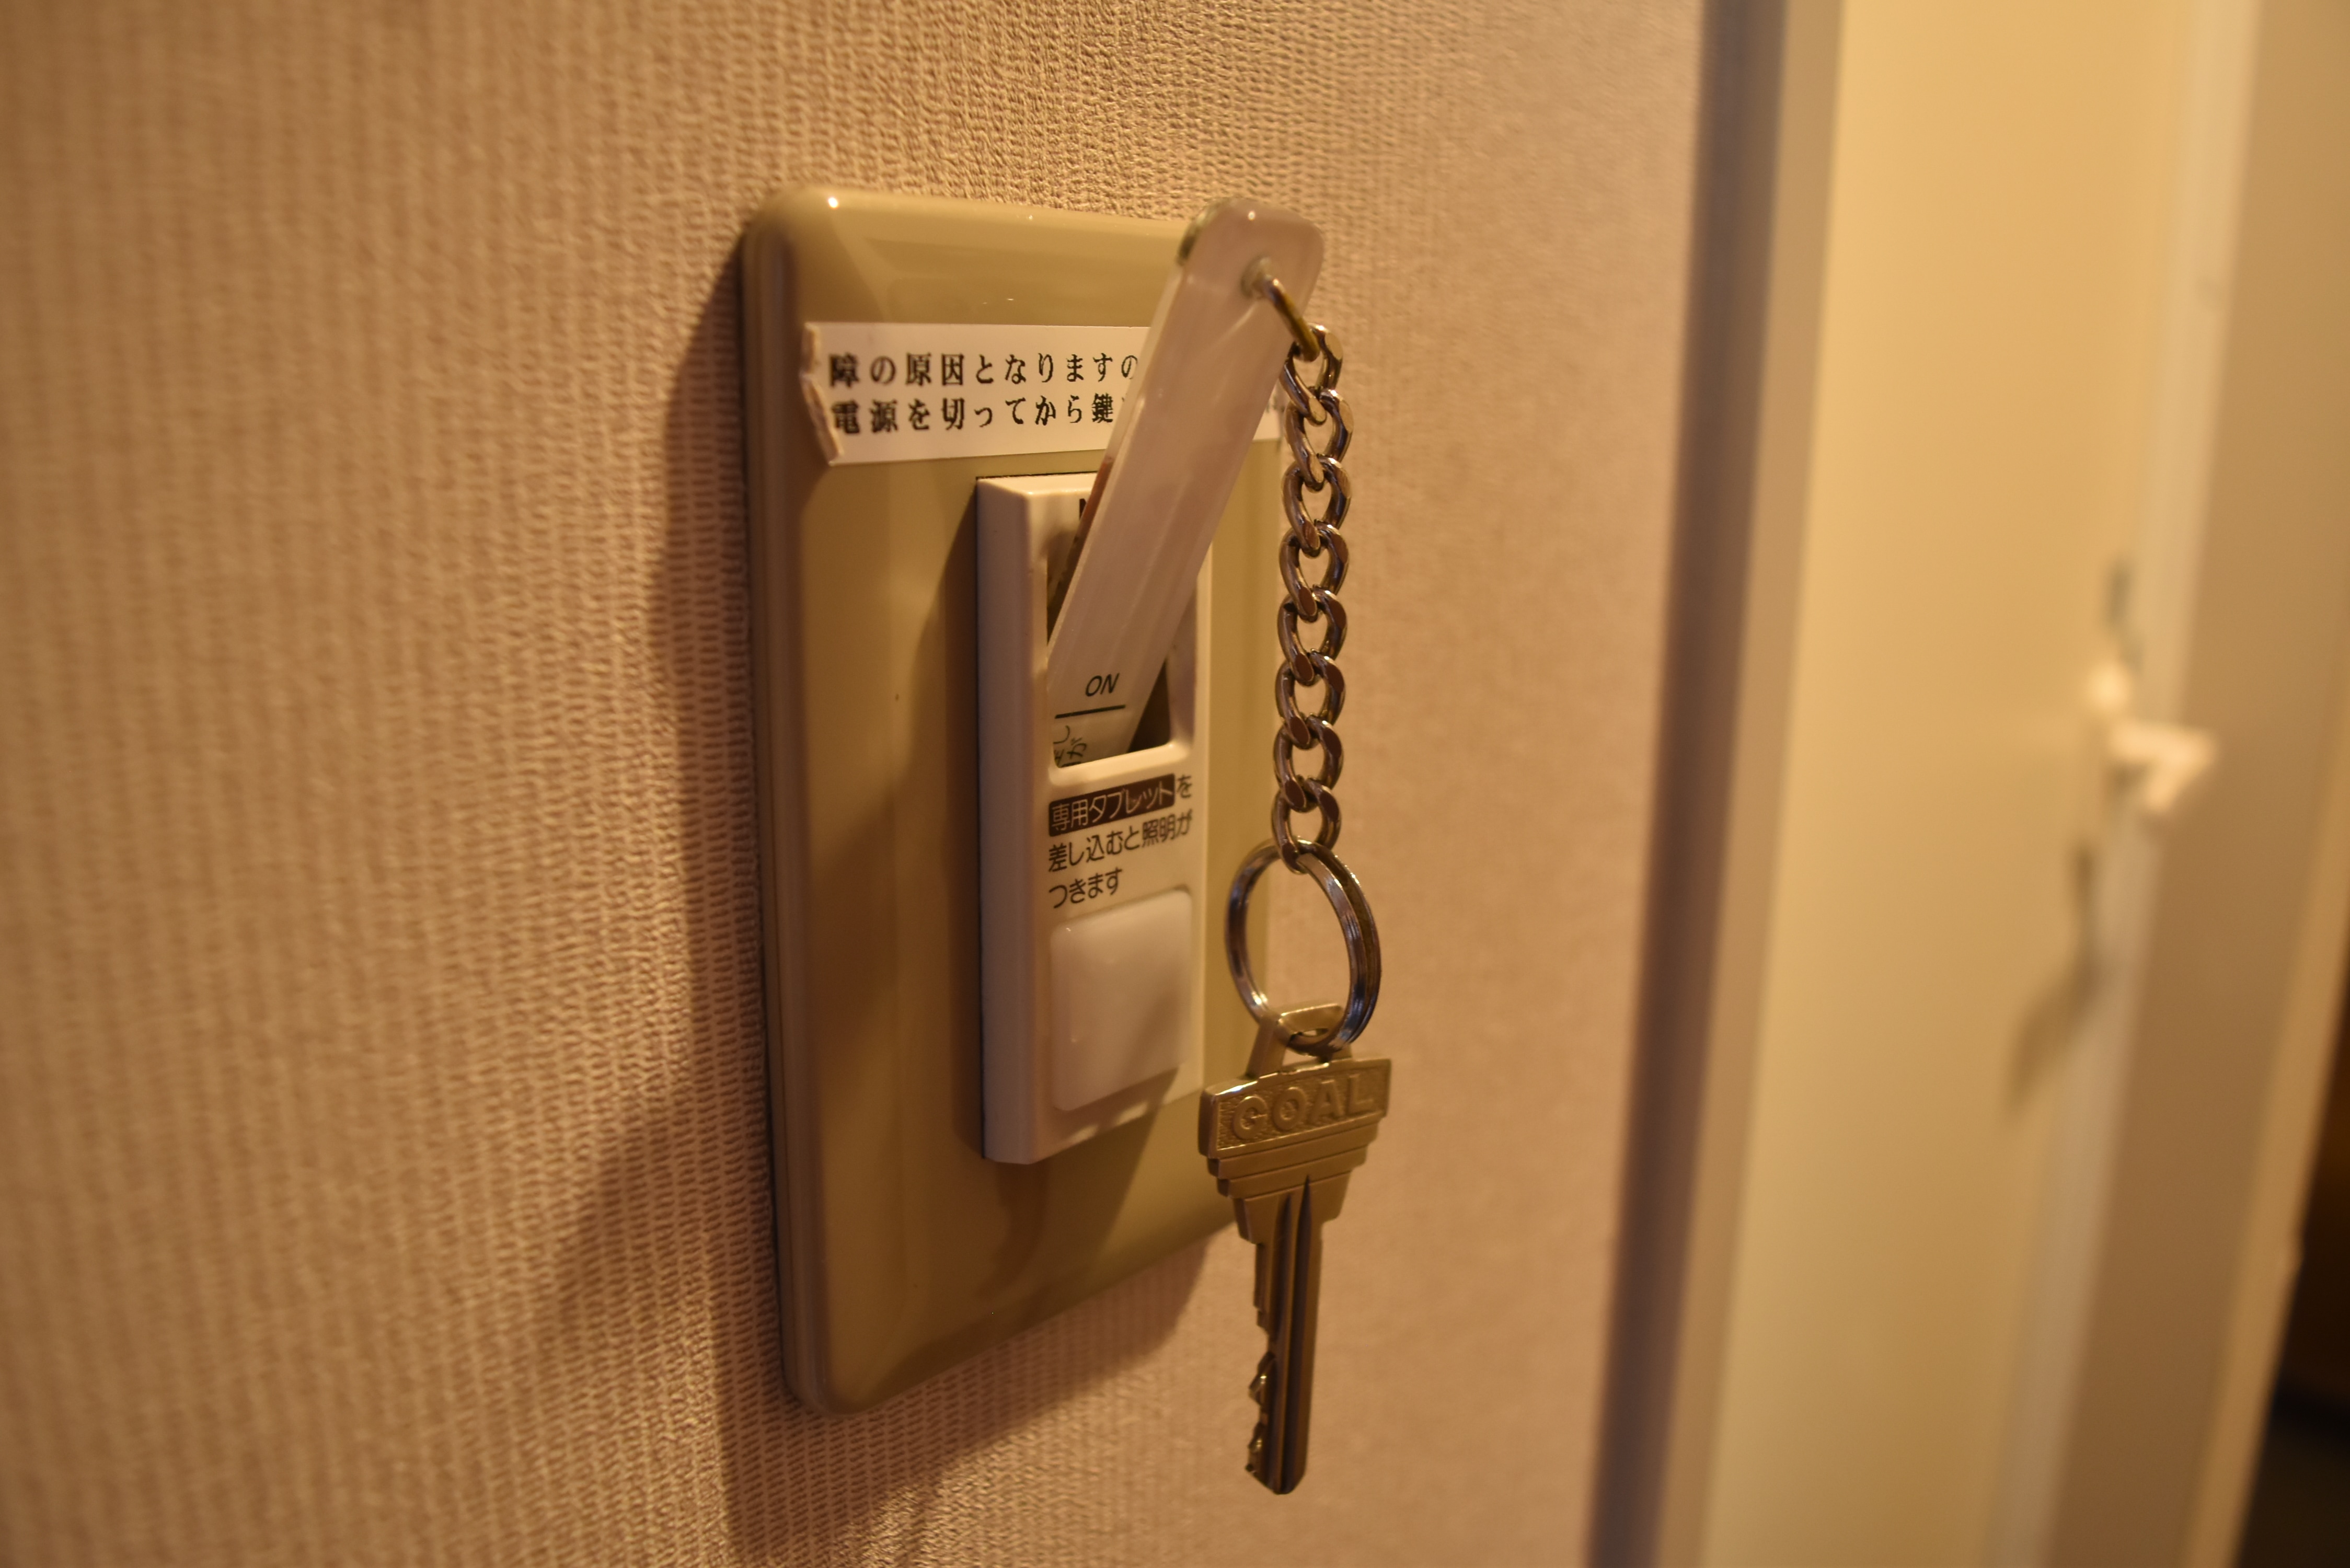 這是一種通過插入房間鑰匙打開房間內電源的系統。